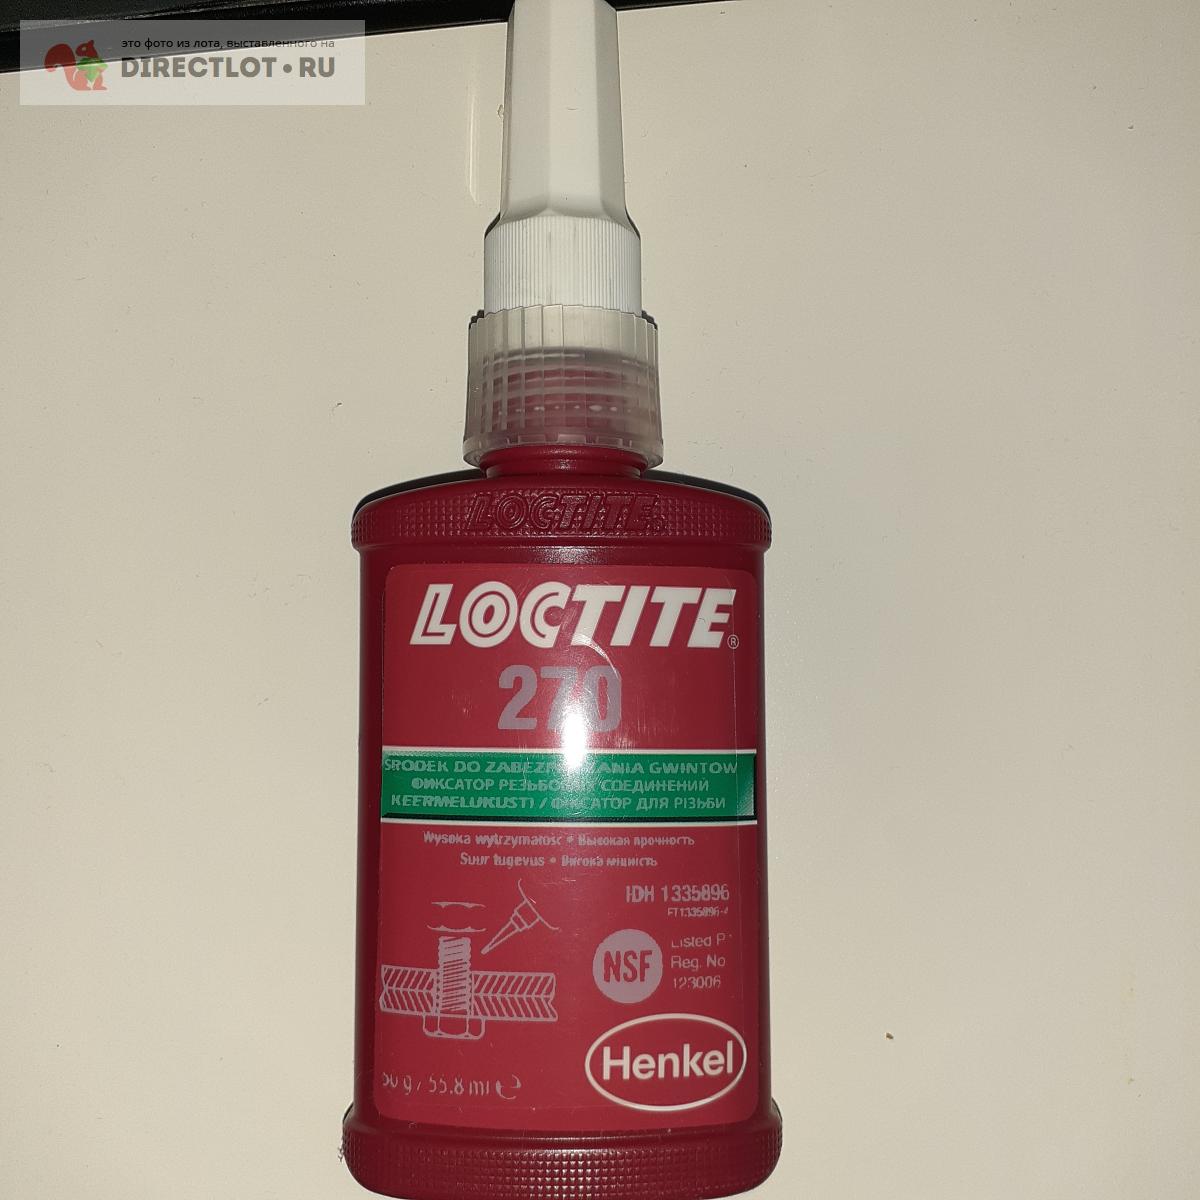 Герметик резьбовой  Loctite 270  в Братске цена 1200 Р на .